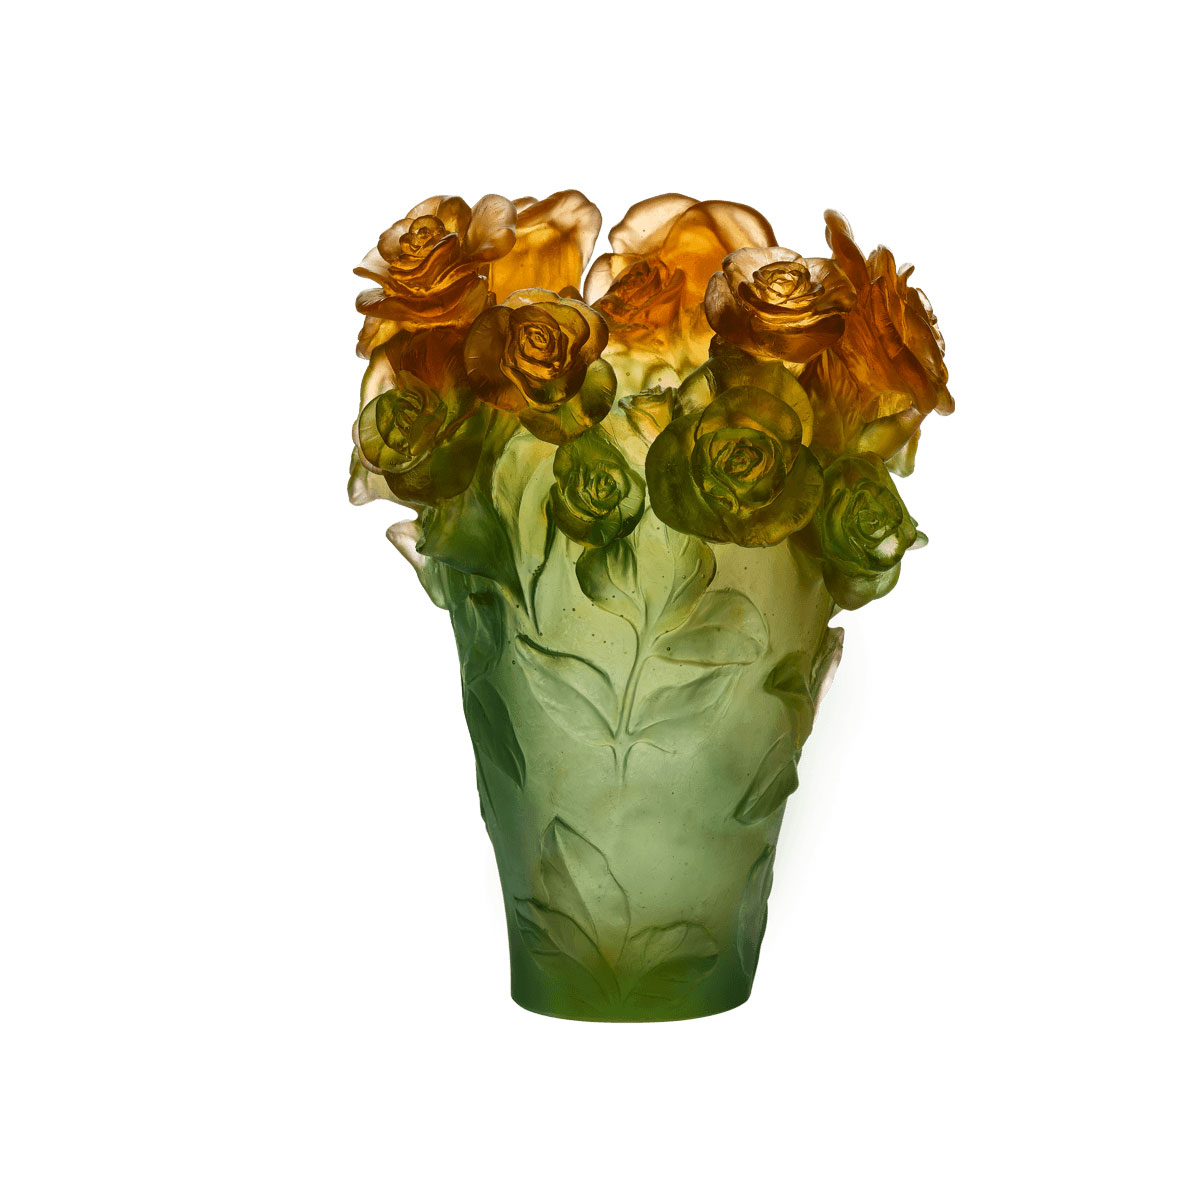 Daum 13.8" Rose Passion Vase in Green and Orange